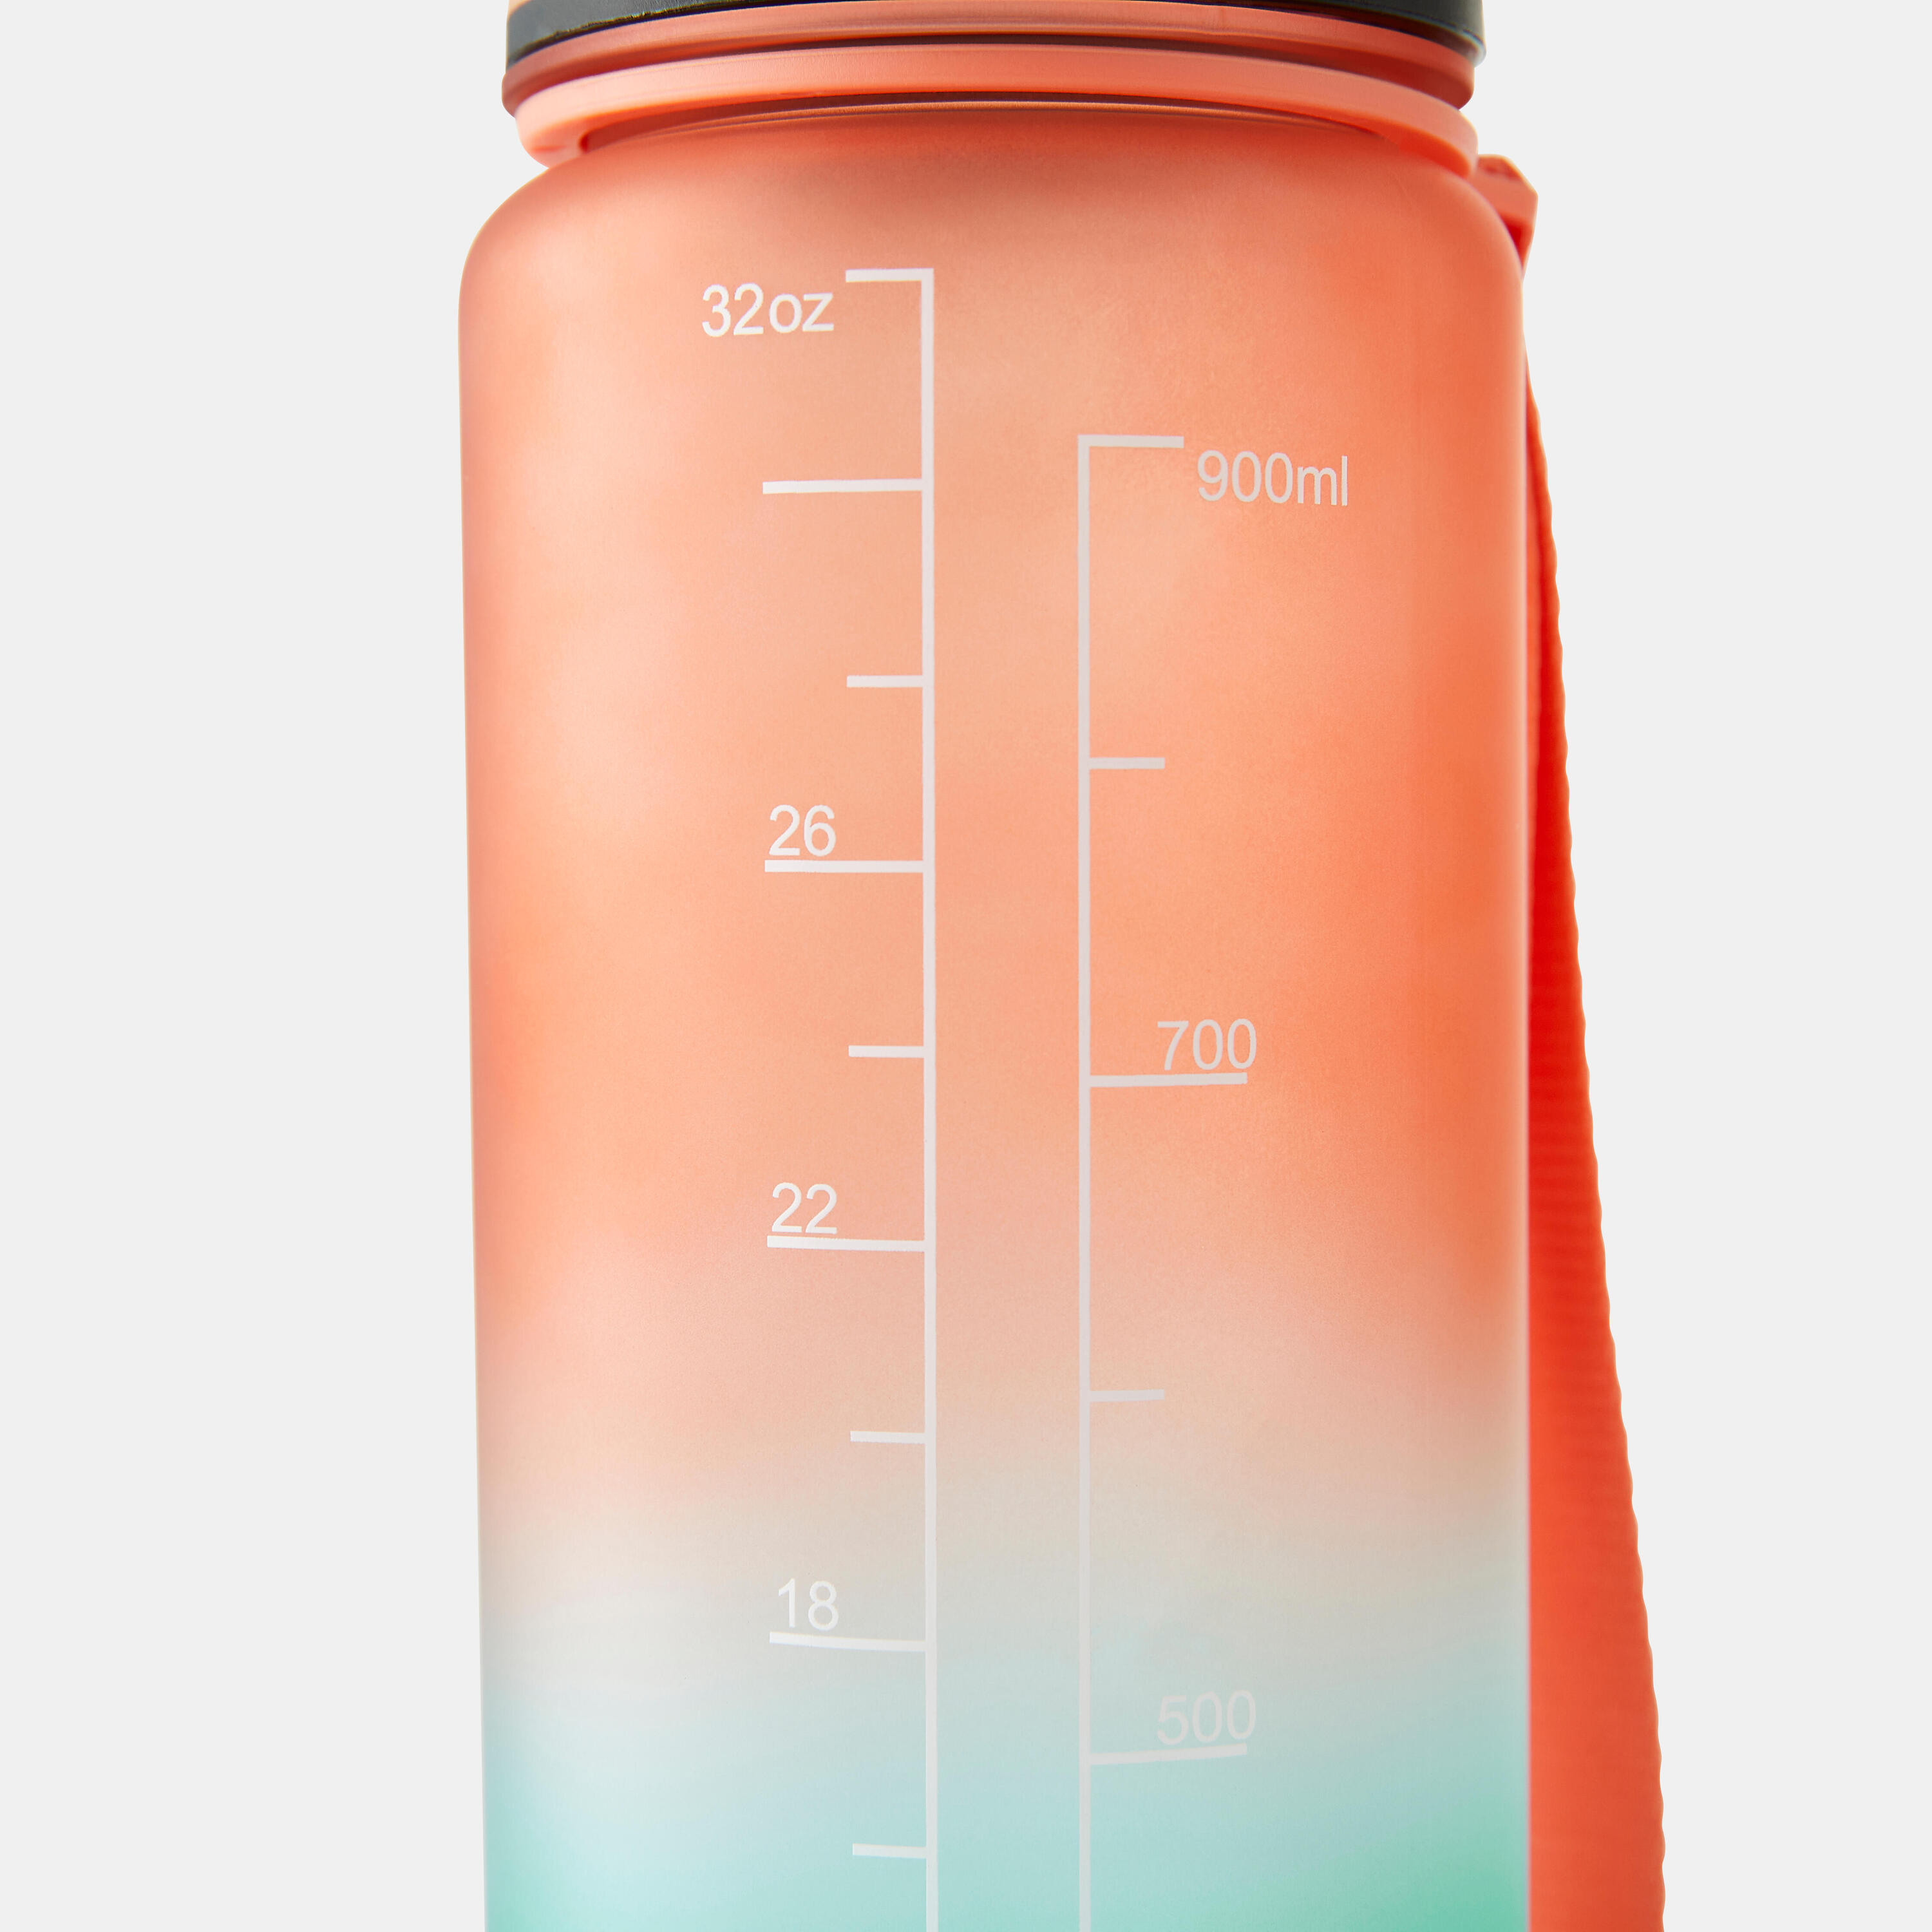 1 Litre Fitness Bottle Motivation - Orange/Green 5/5